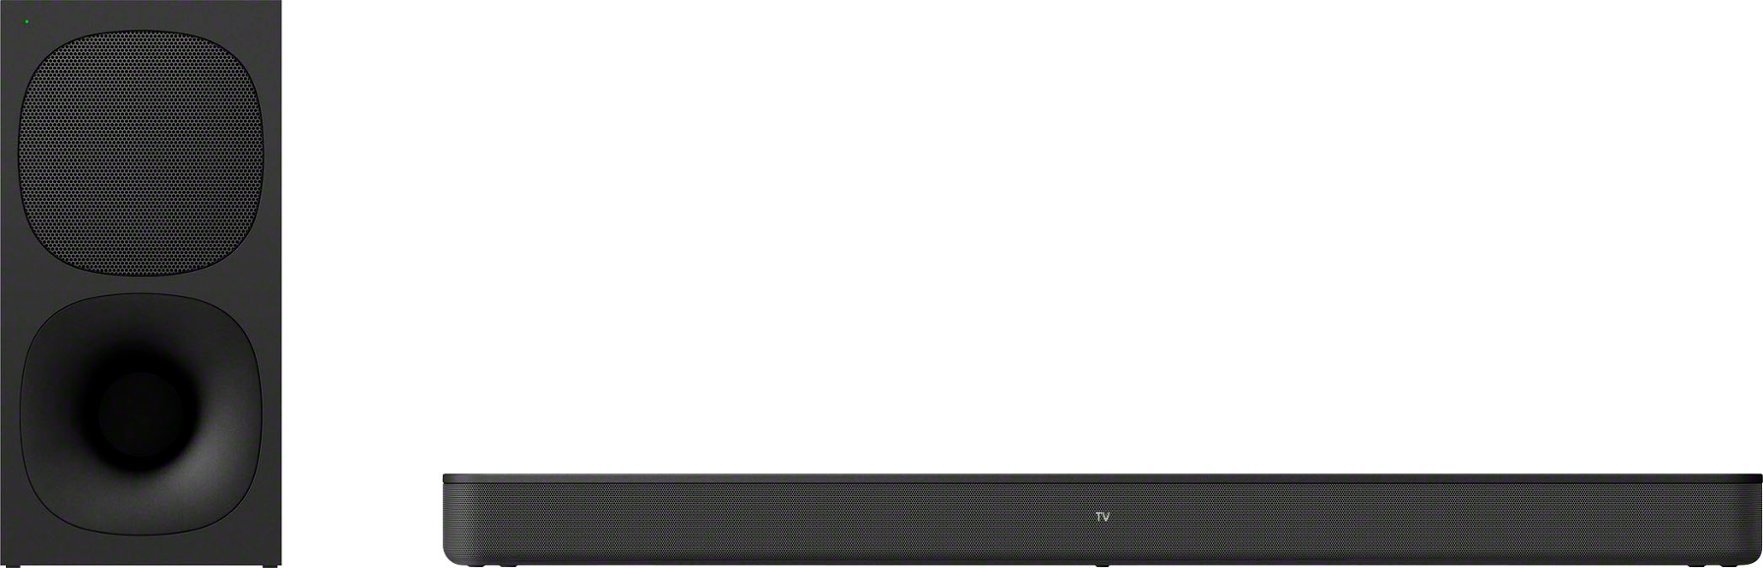 Sony - HT-S400 2.1ch Soundbar with powerful wireless Subwoofer - Black-Black